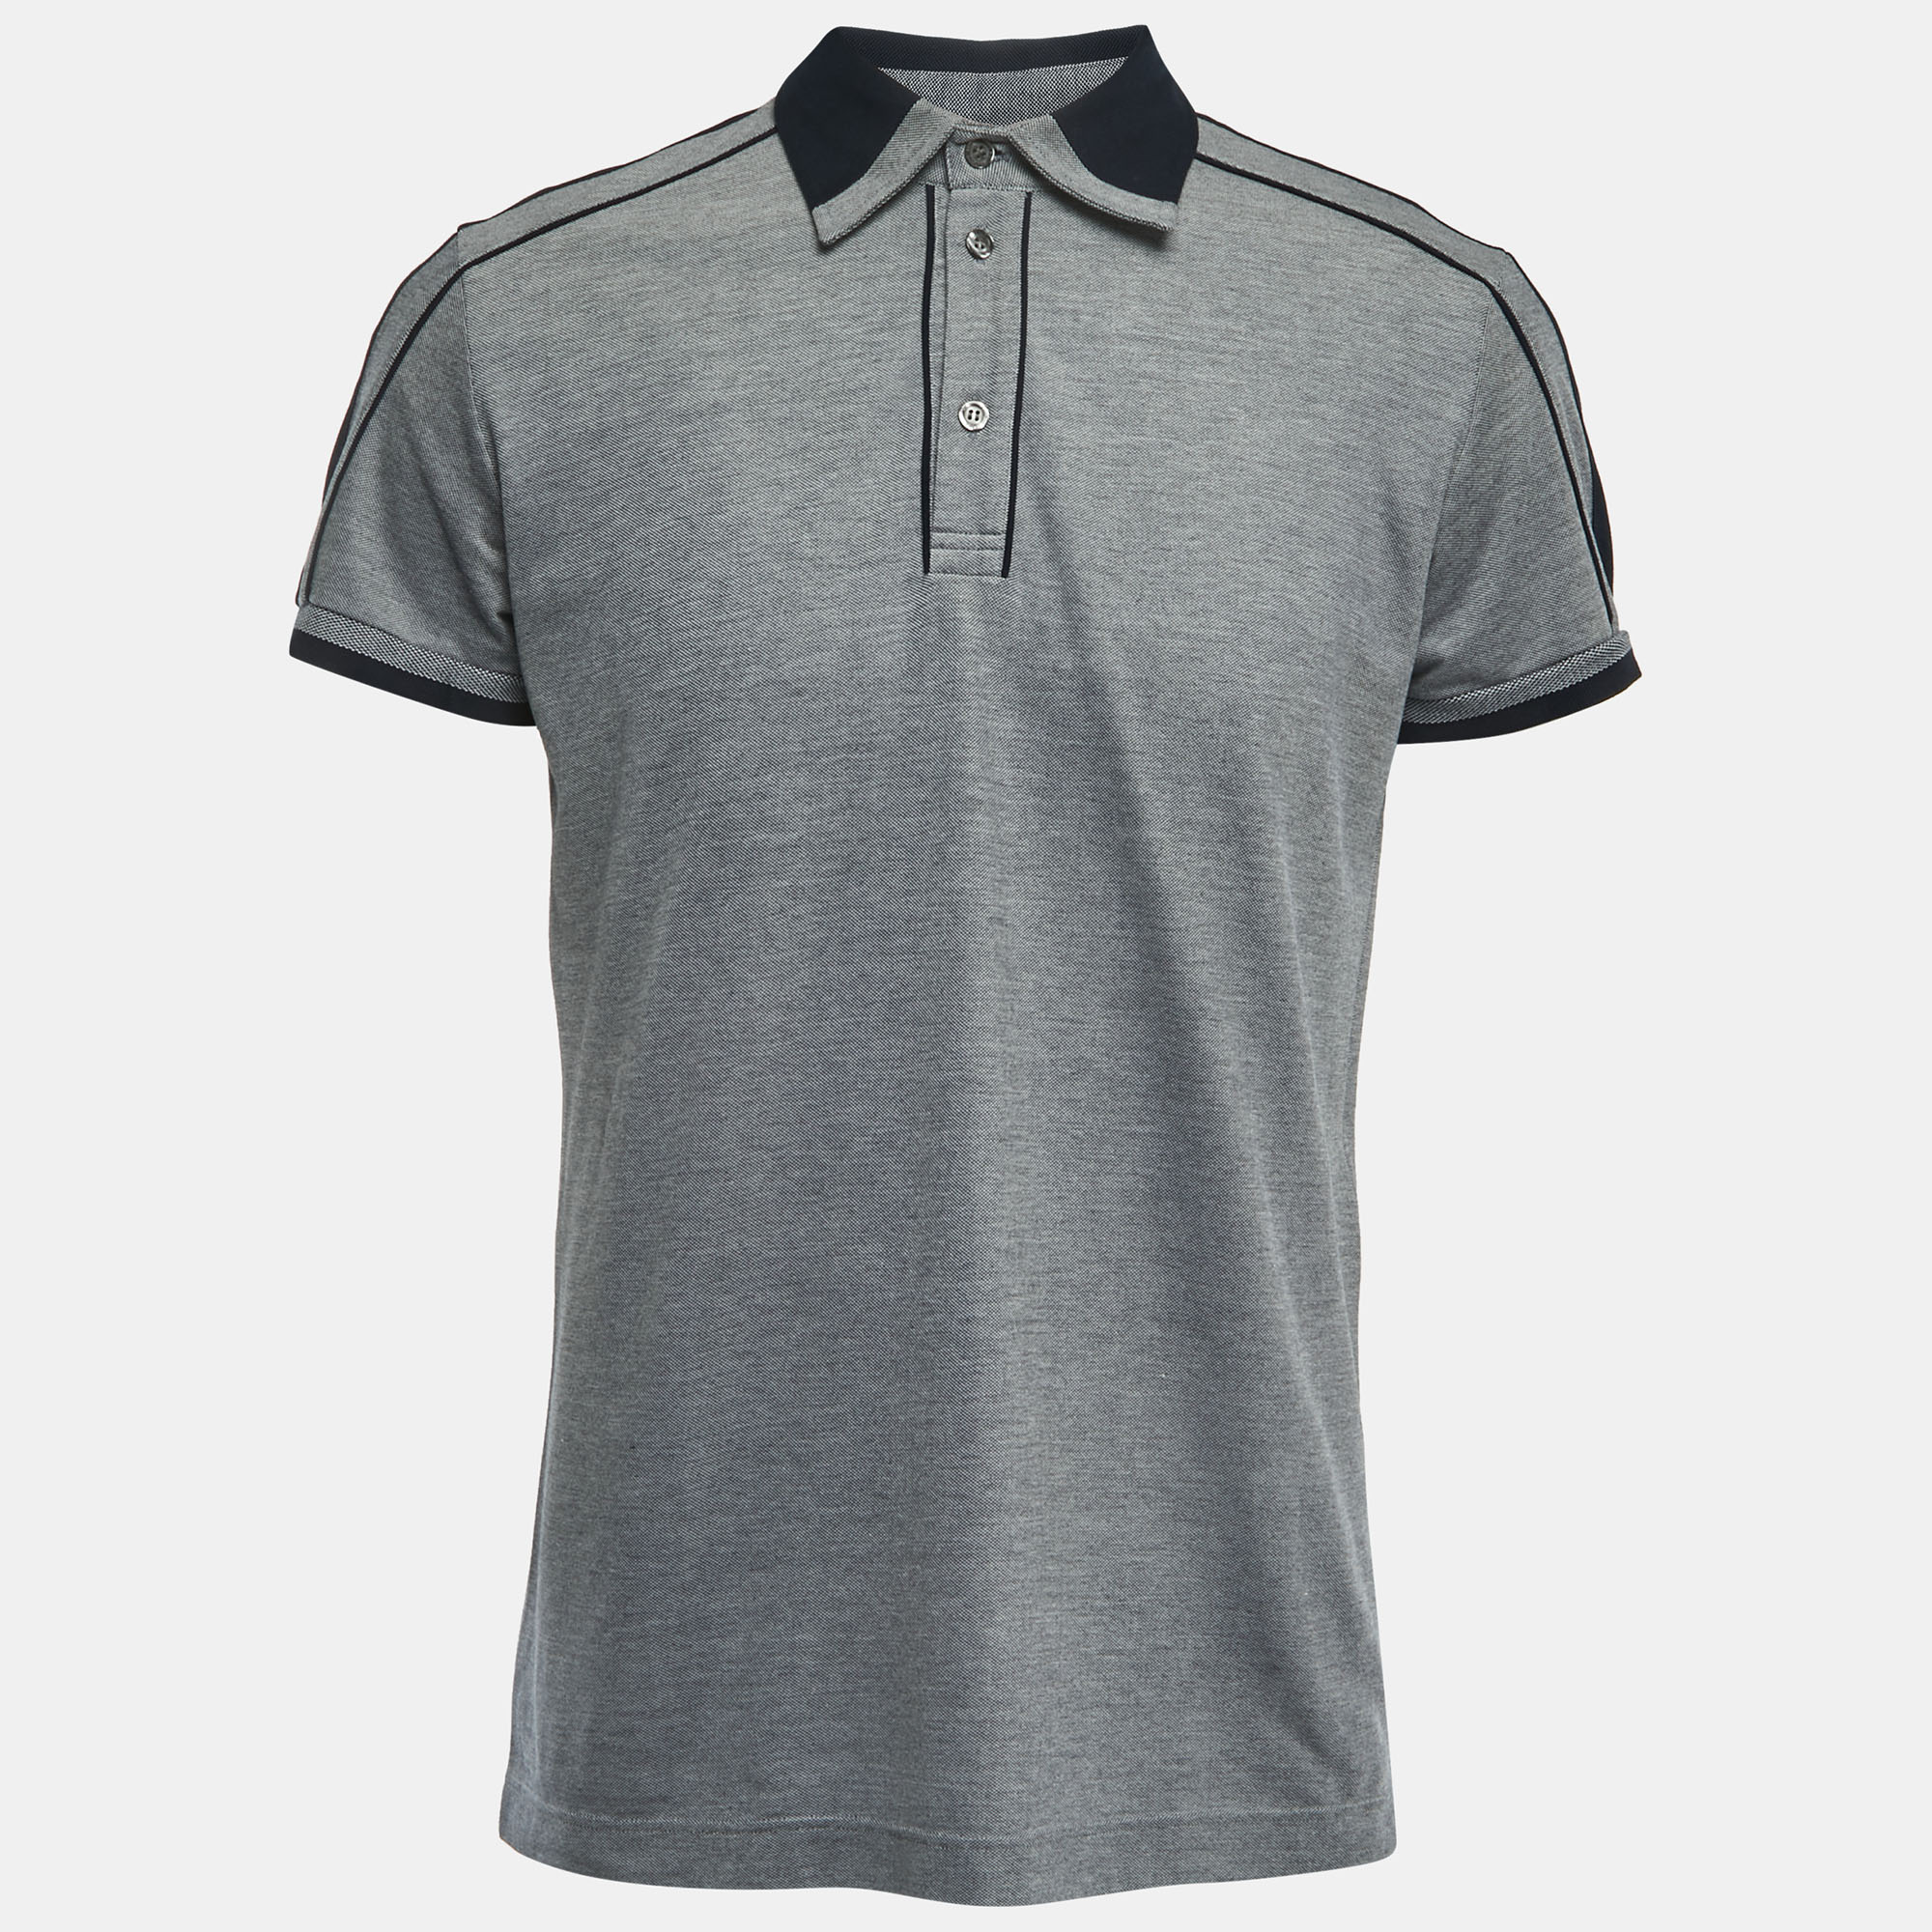 

D&G Grey/Navy Blue Cotton Pique Polo T-Shirt